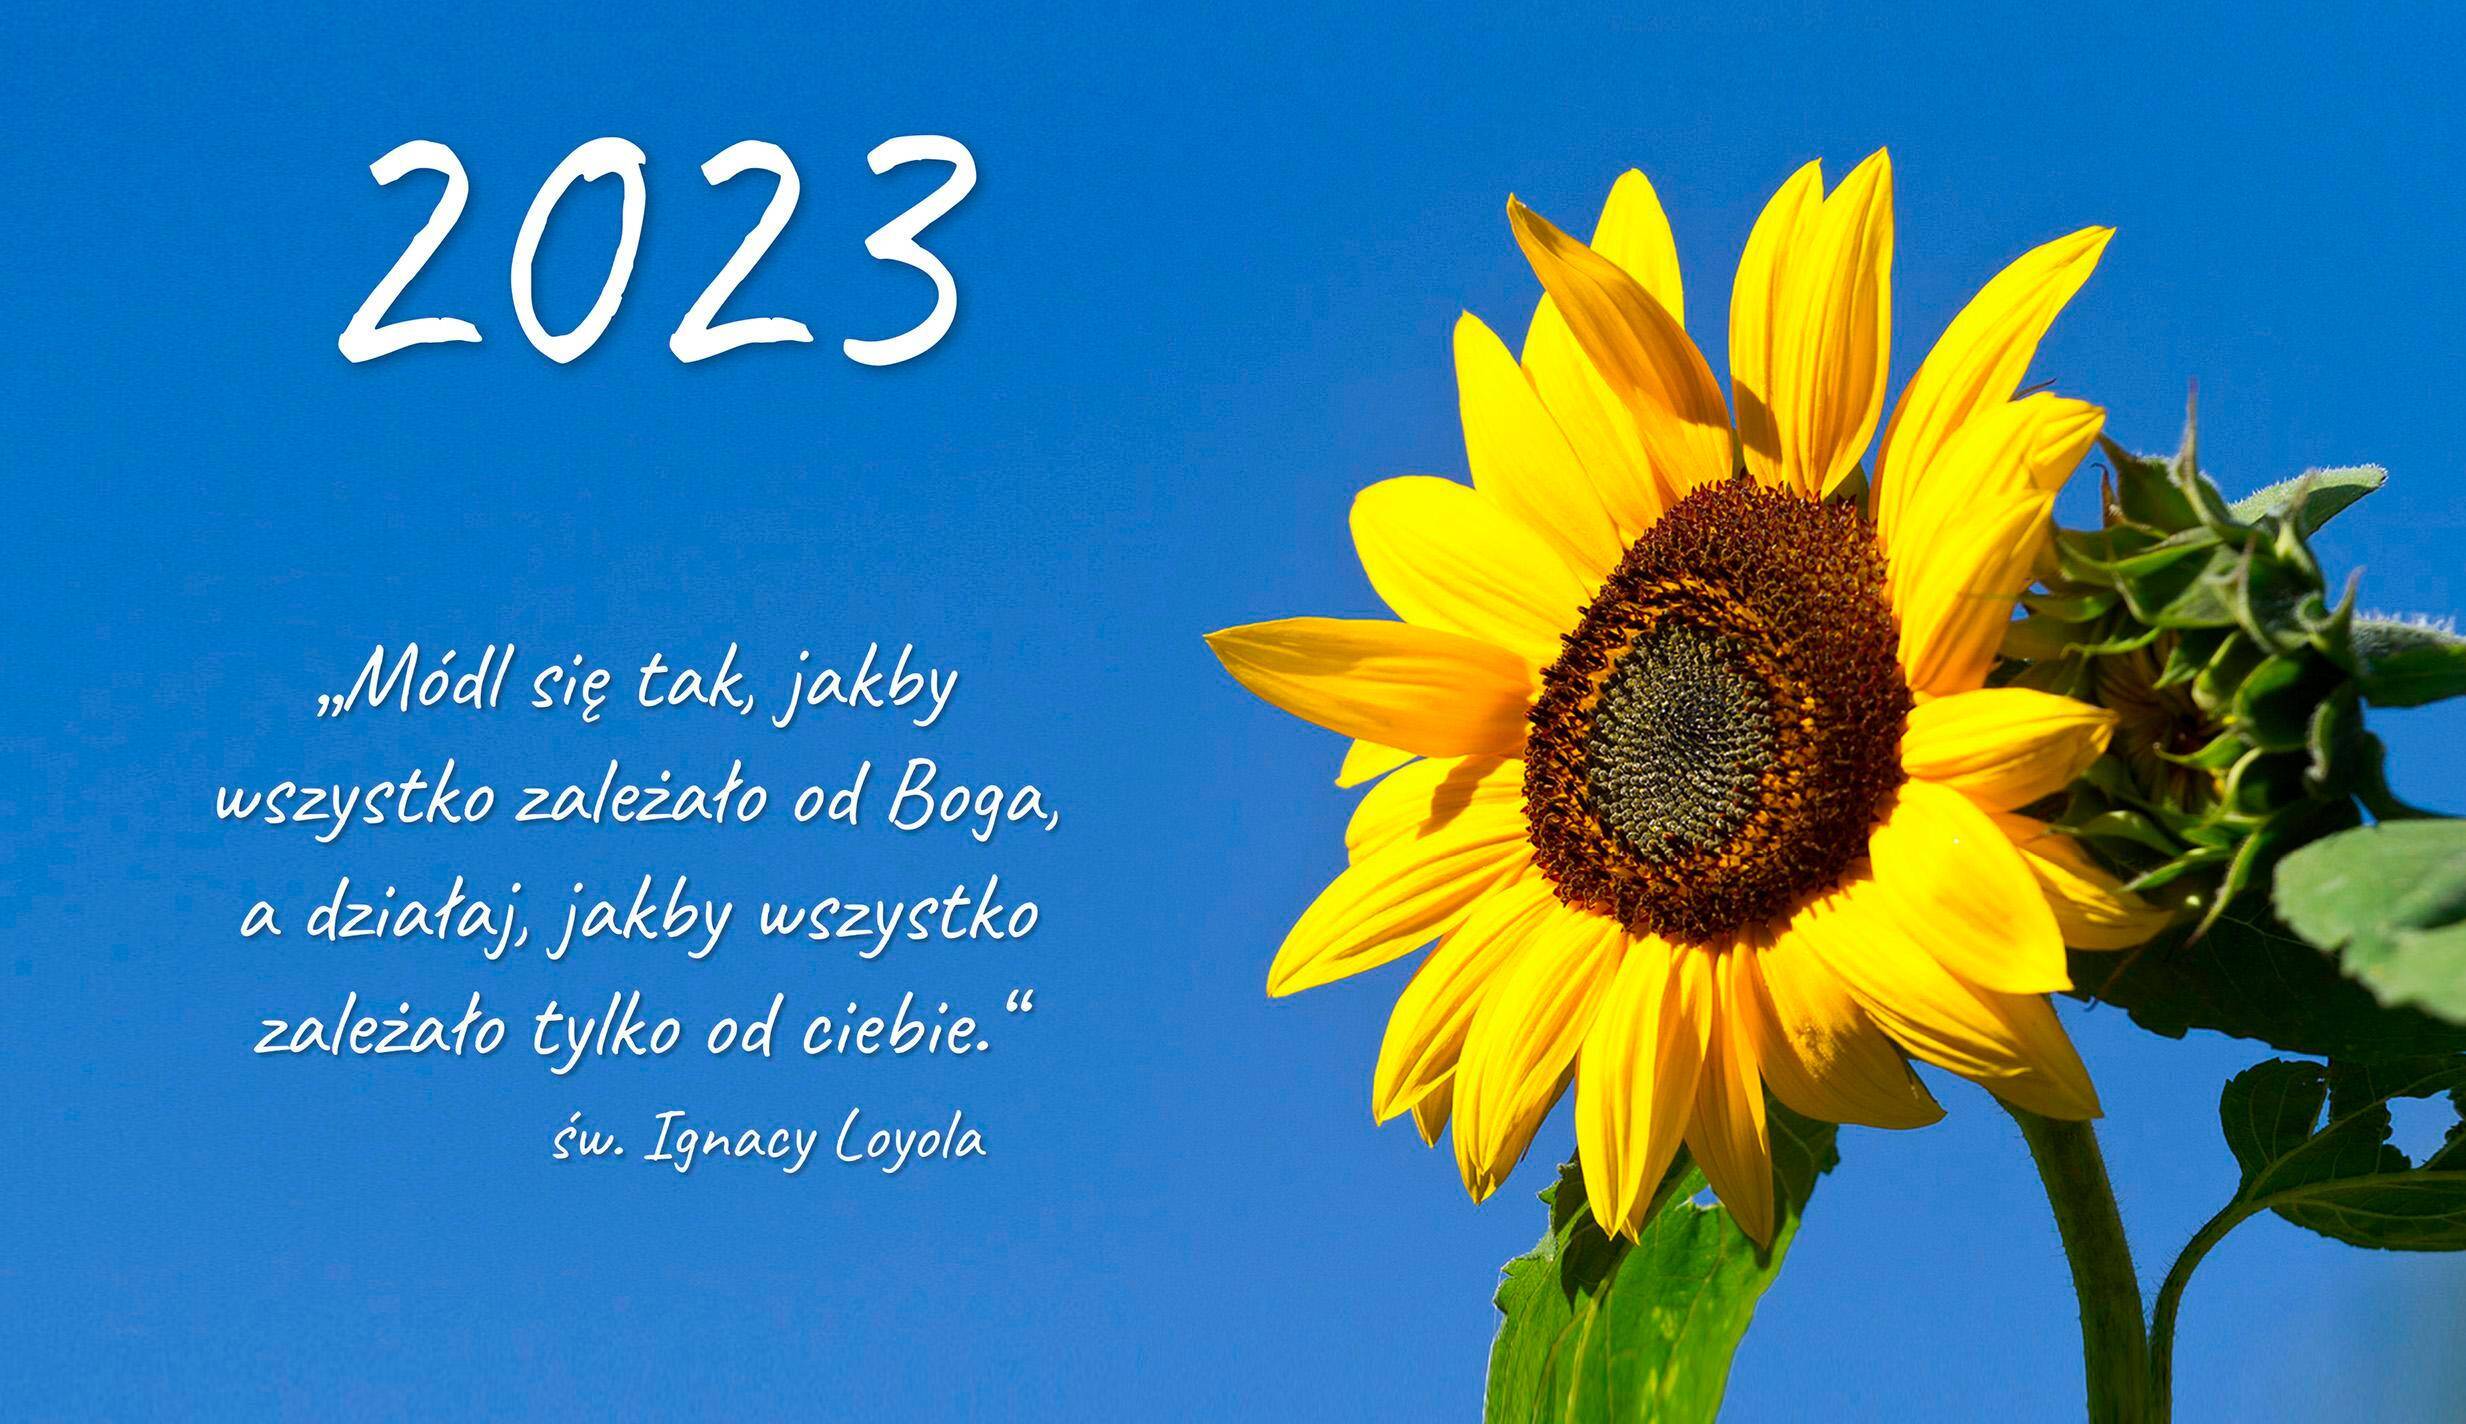 2023 kalendarz trójdzielny - Słonecznik (Photo 1)